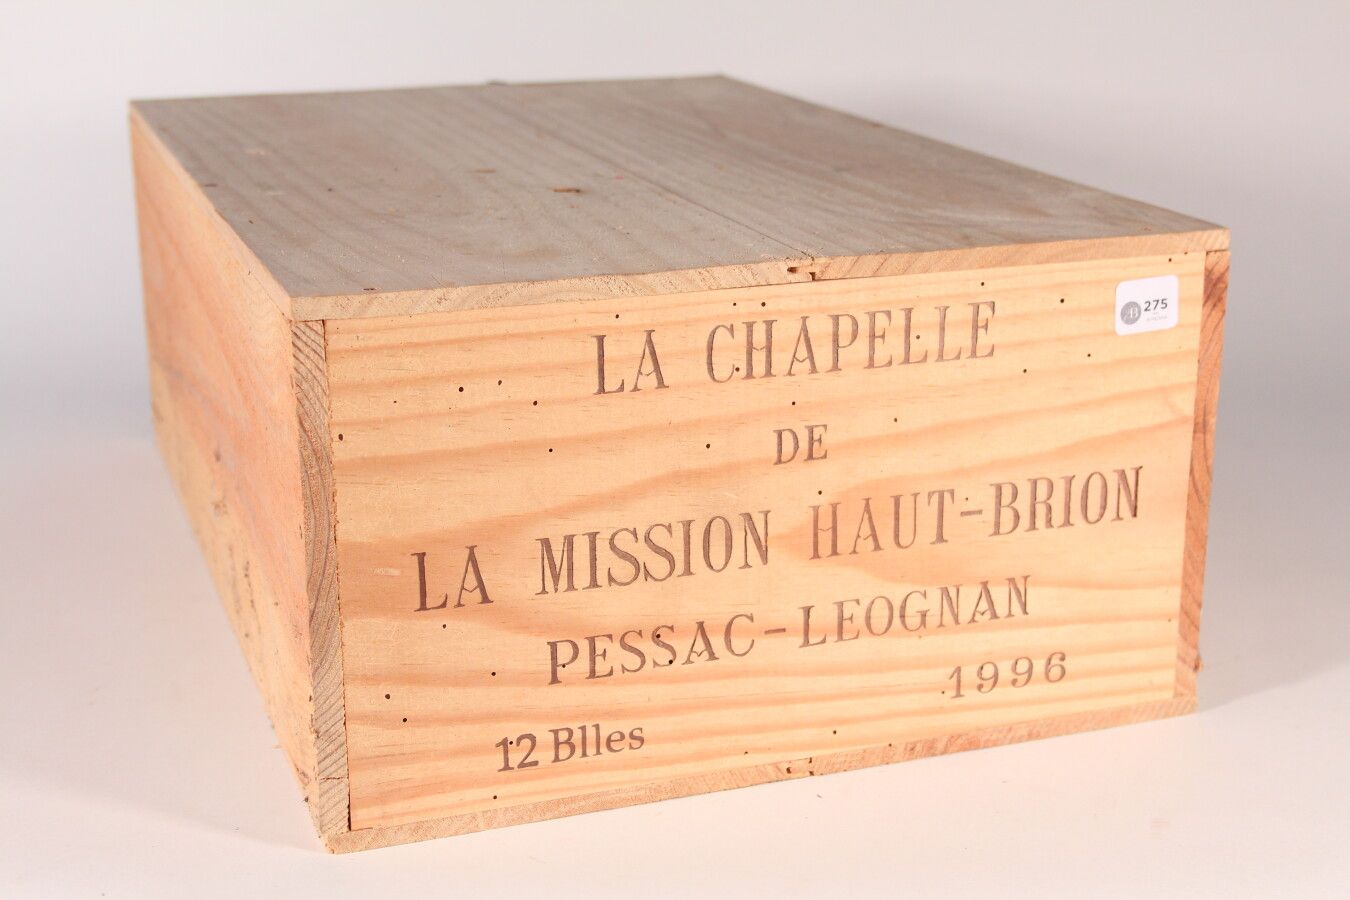 Null 1996 - La Chapelle de la Mission Haut Brion

佩萨克-雷奥良红葡萄酒 - 12瓶